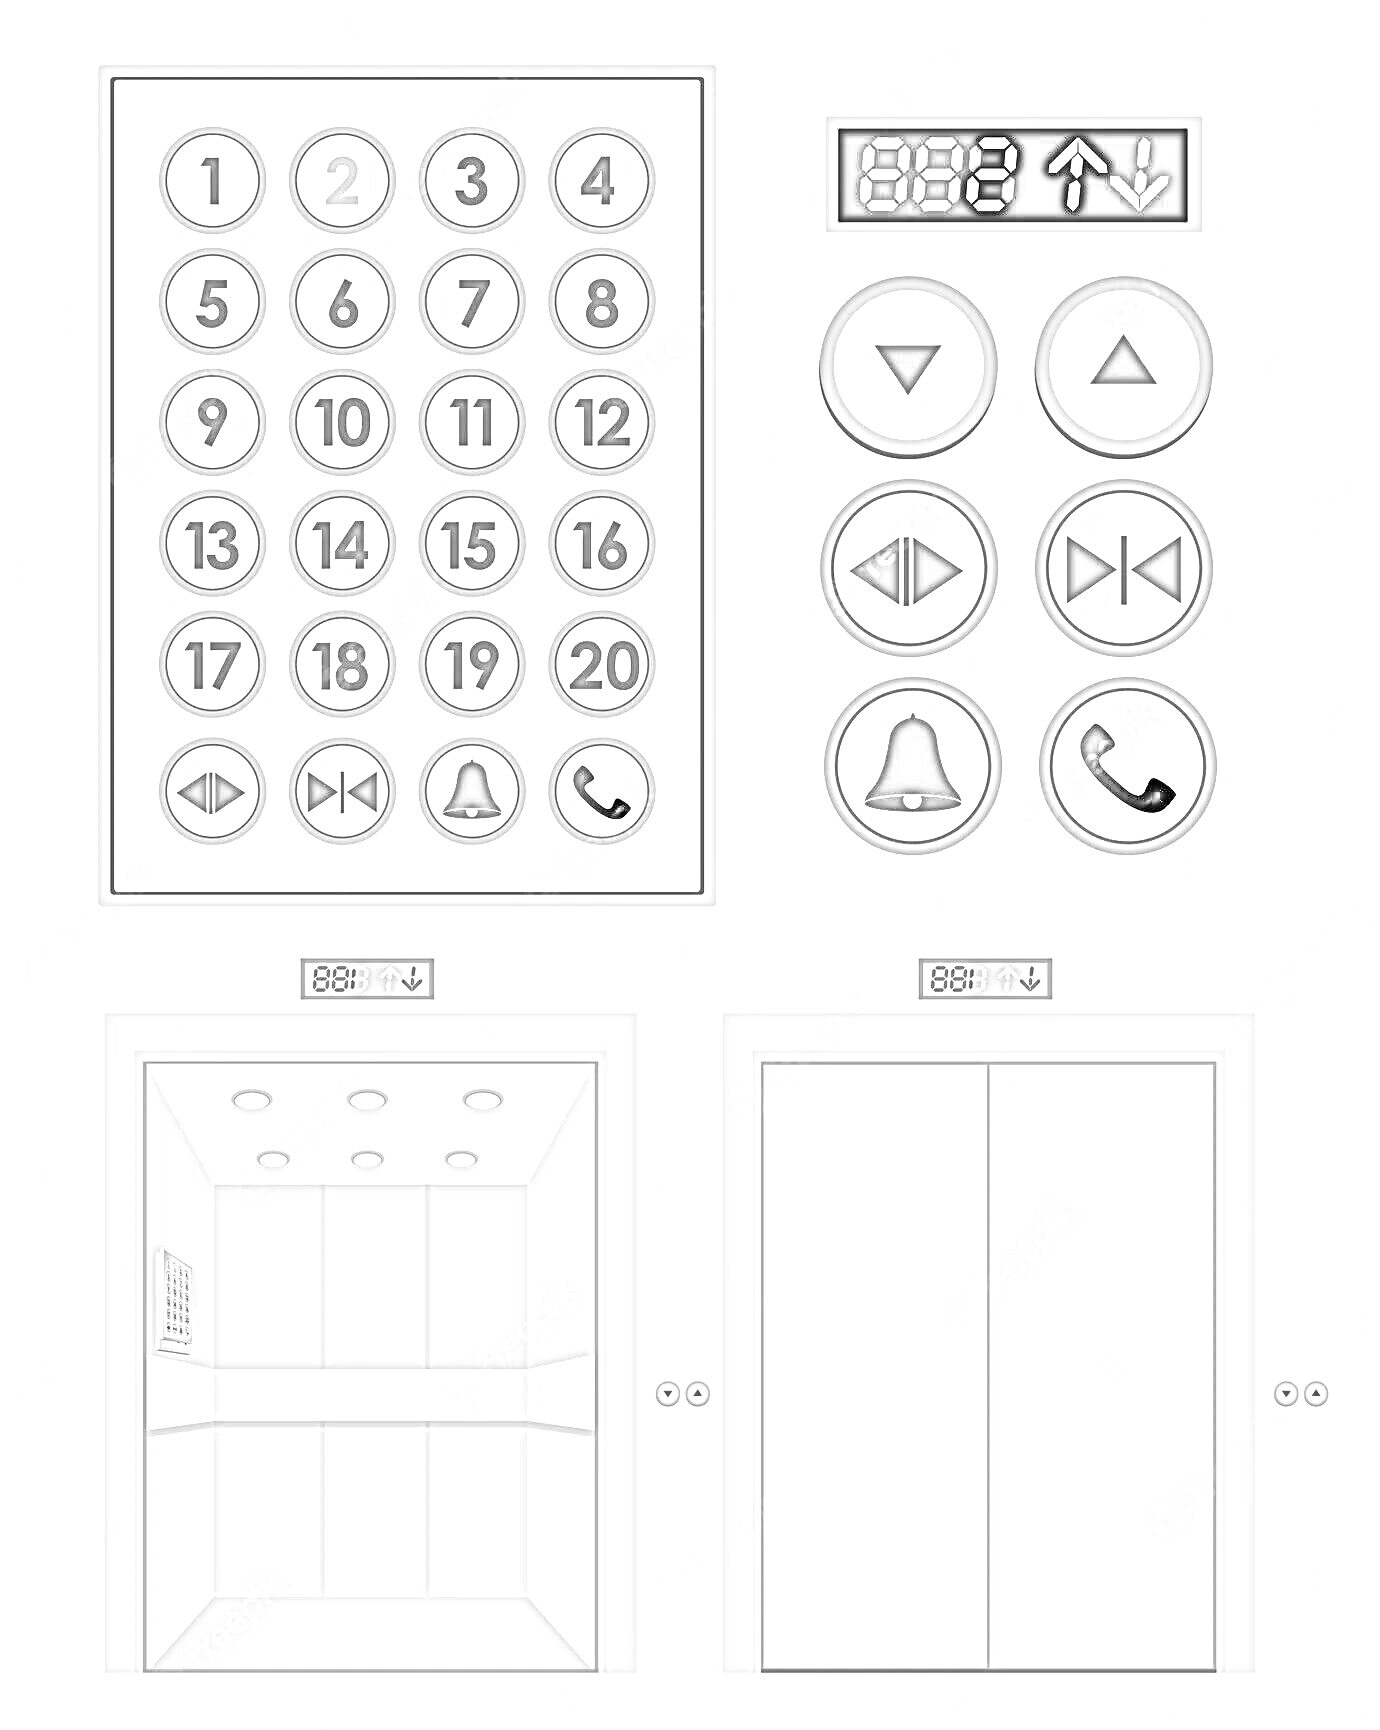 Раскраска Кнопки лифта с панелью кнопок, индикатором этажей, кнопками управления дверями, кнопками вызова и уведомлений, а также изображениями открытого и закрытого лифта